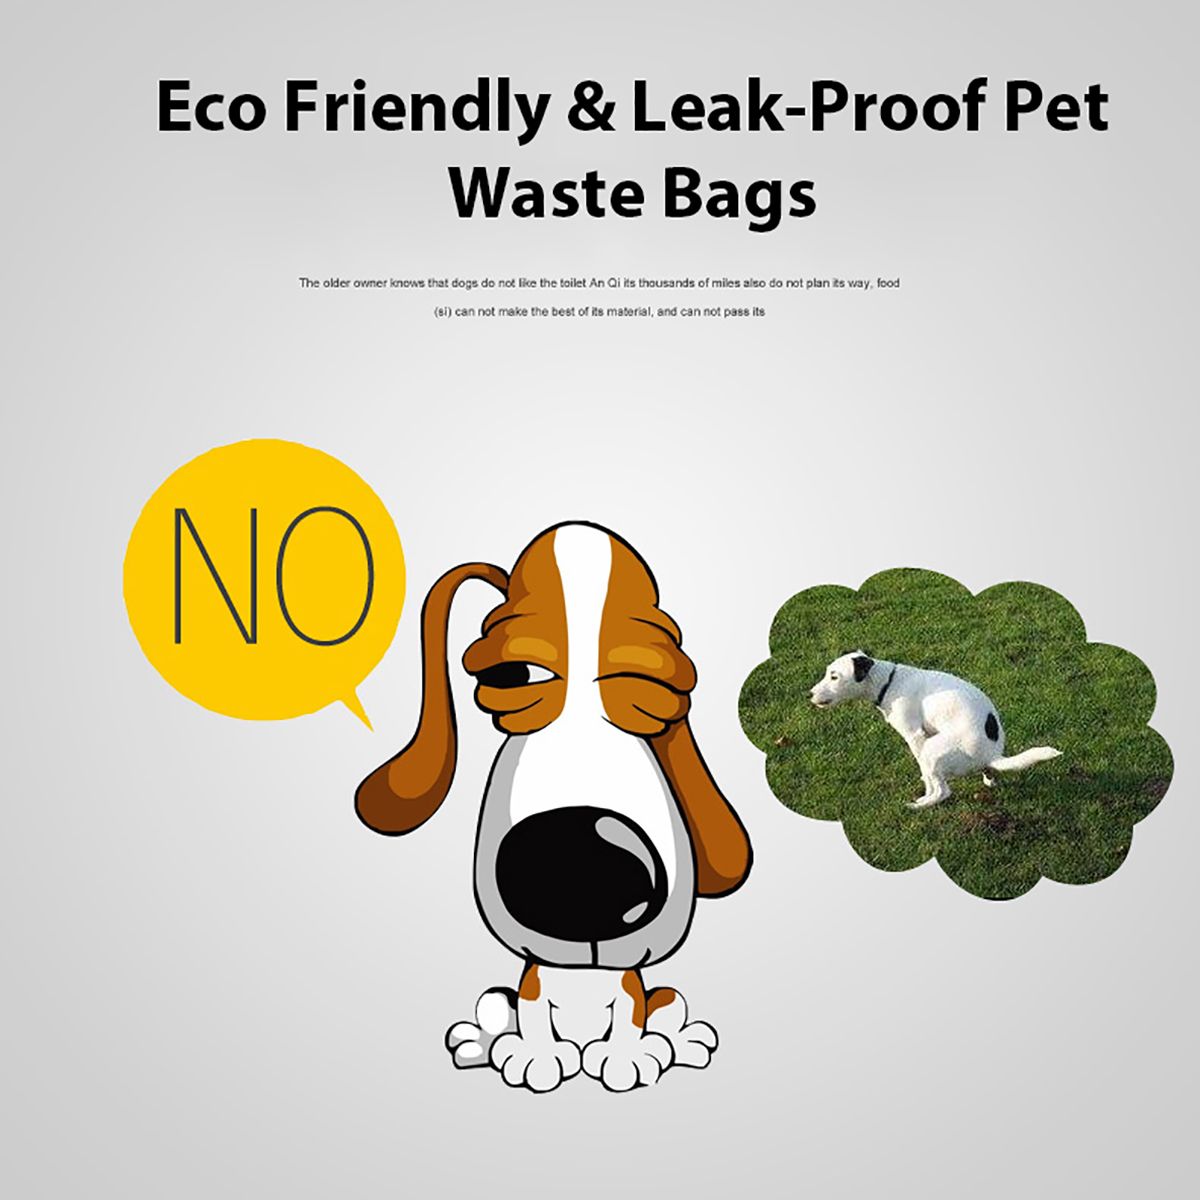 816-Rolls-Biodegradable-Dog-Puppy-Pet-Poop-Bag-Pick-Up-Waste-Garbage-Bags-Trash-Bag-1541387